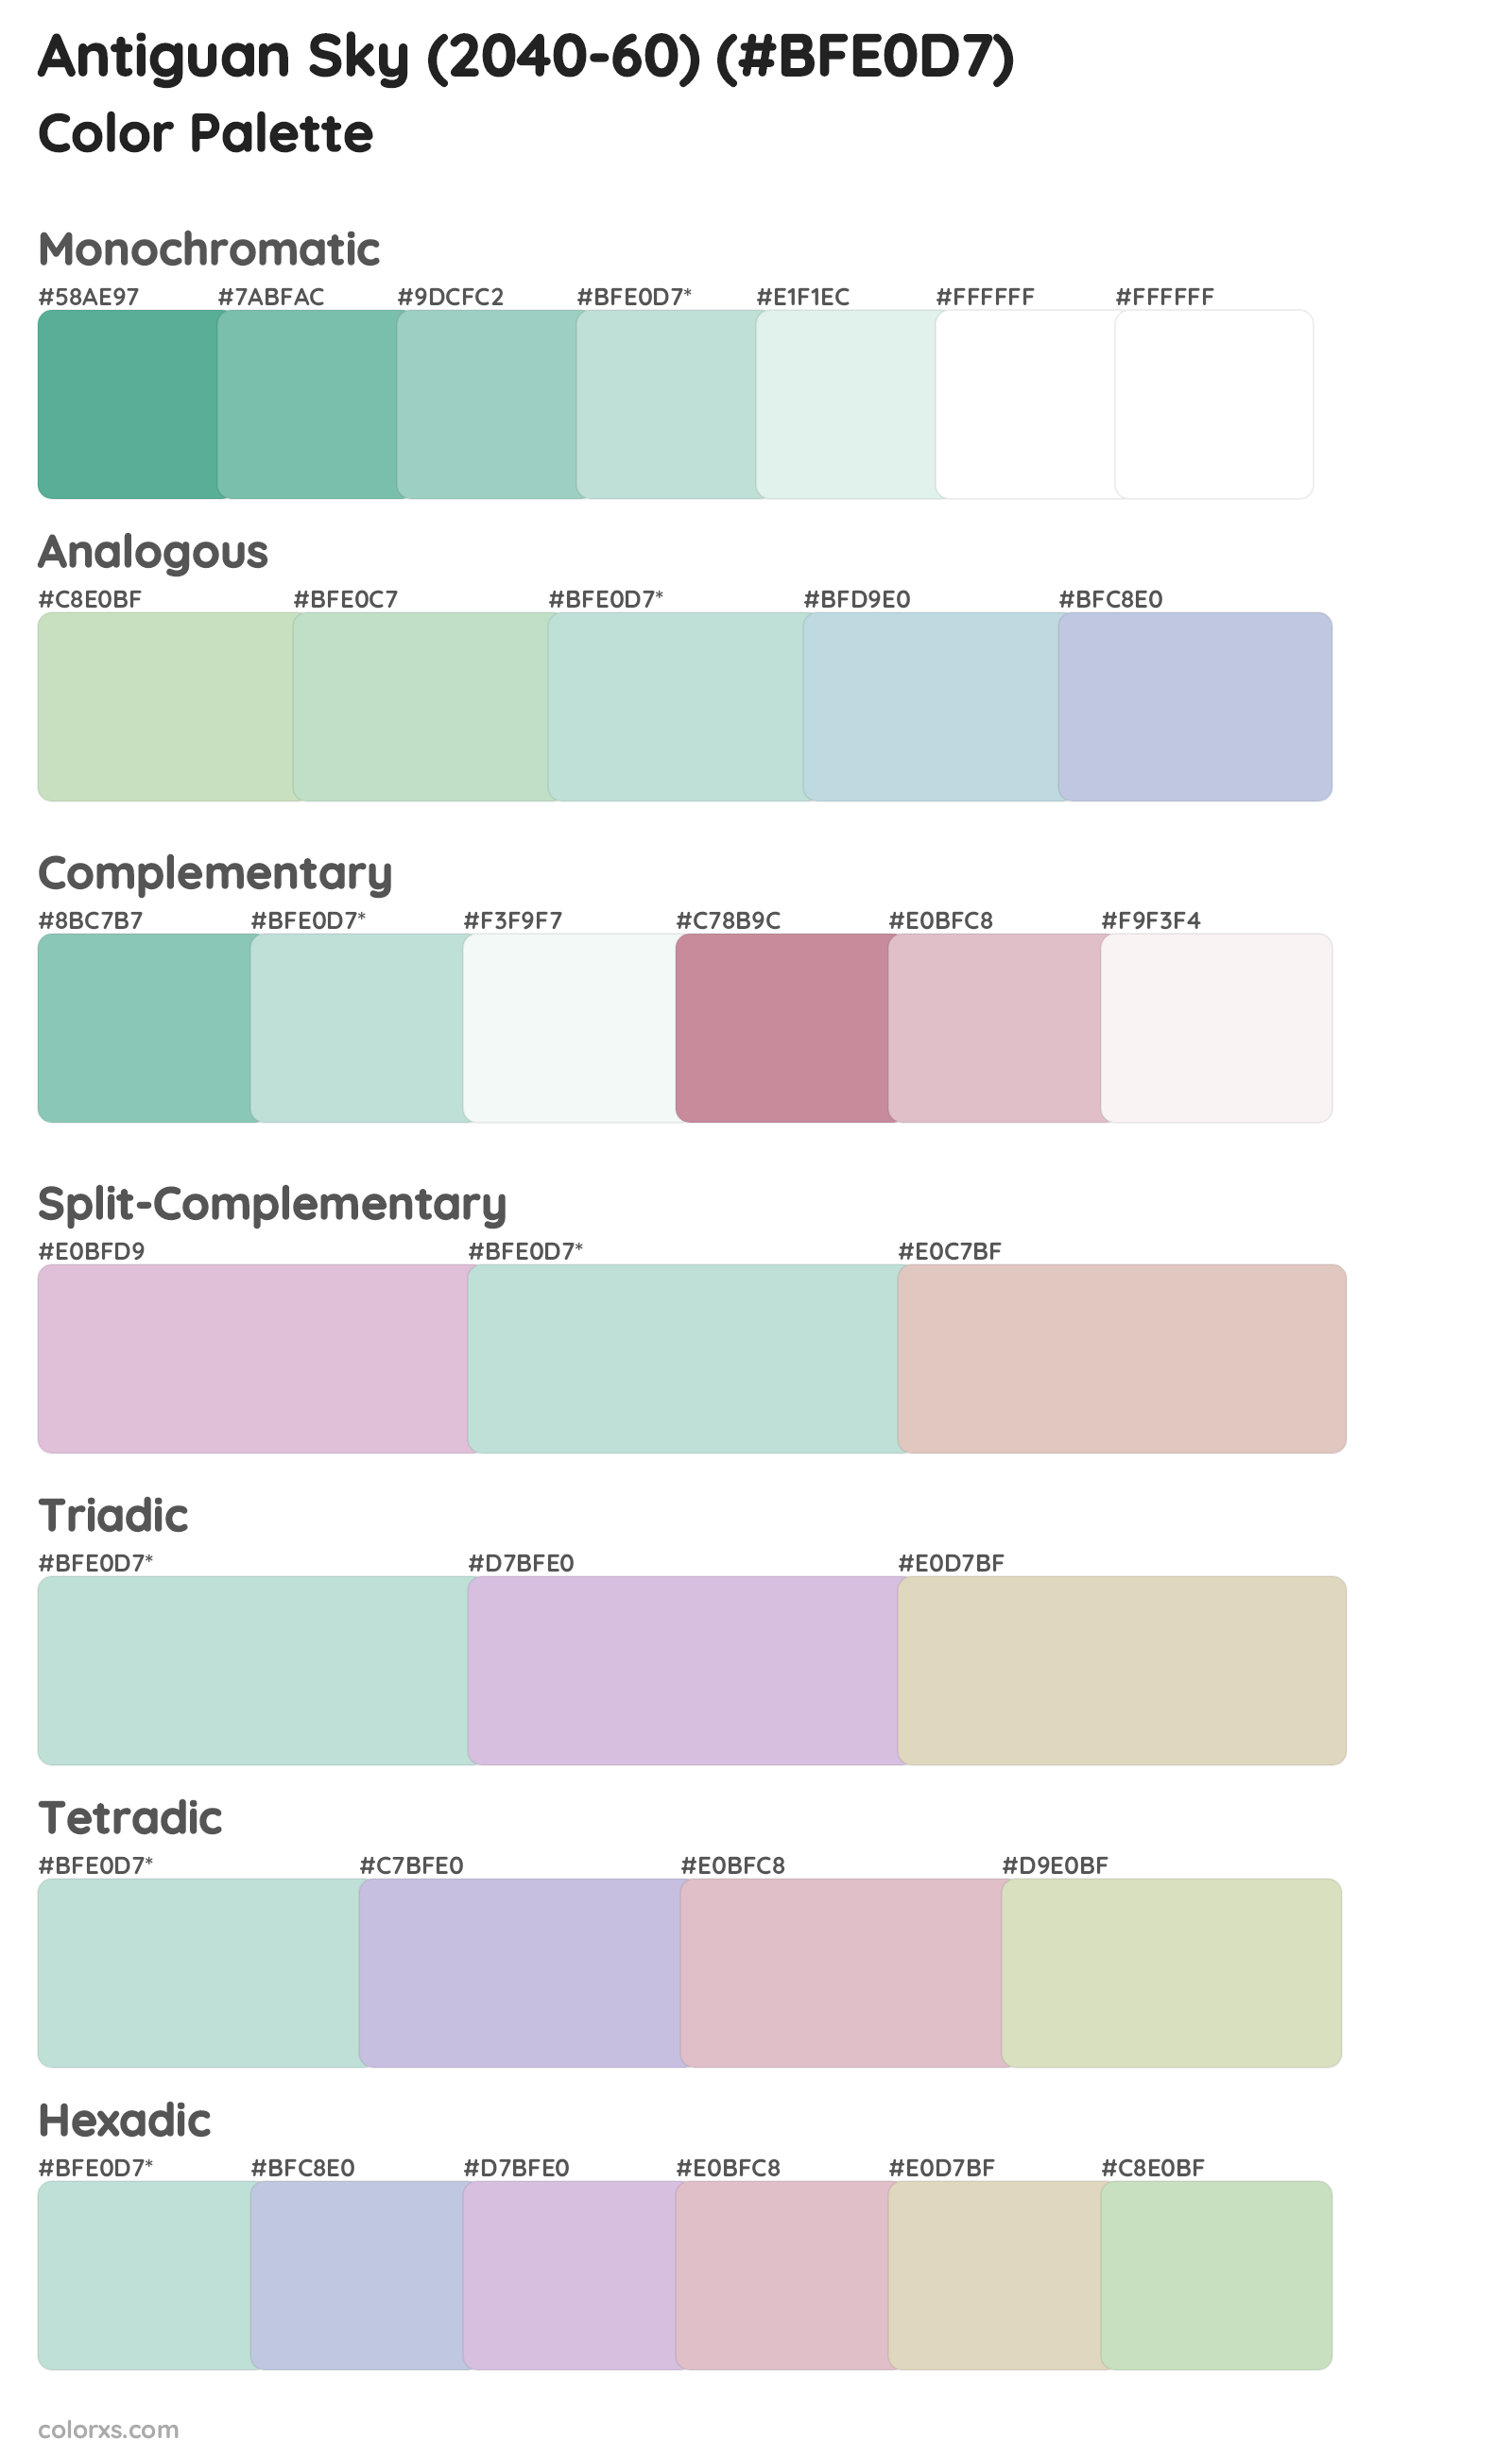 Antiguan Sky (2040-60) Color Scheme Palettes